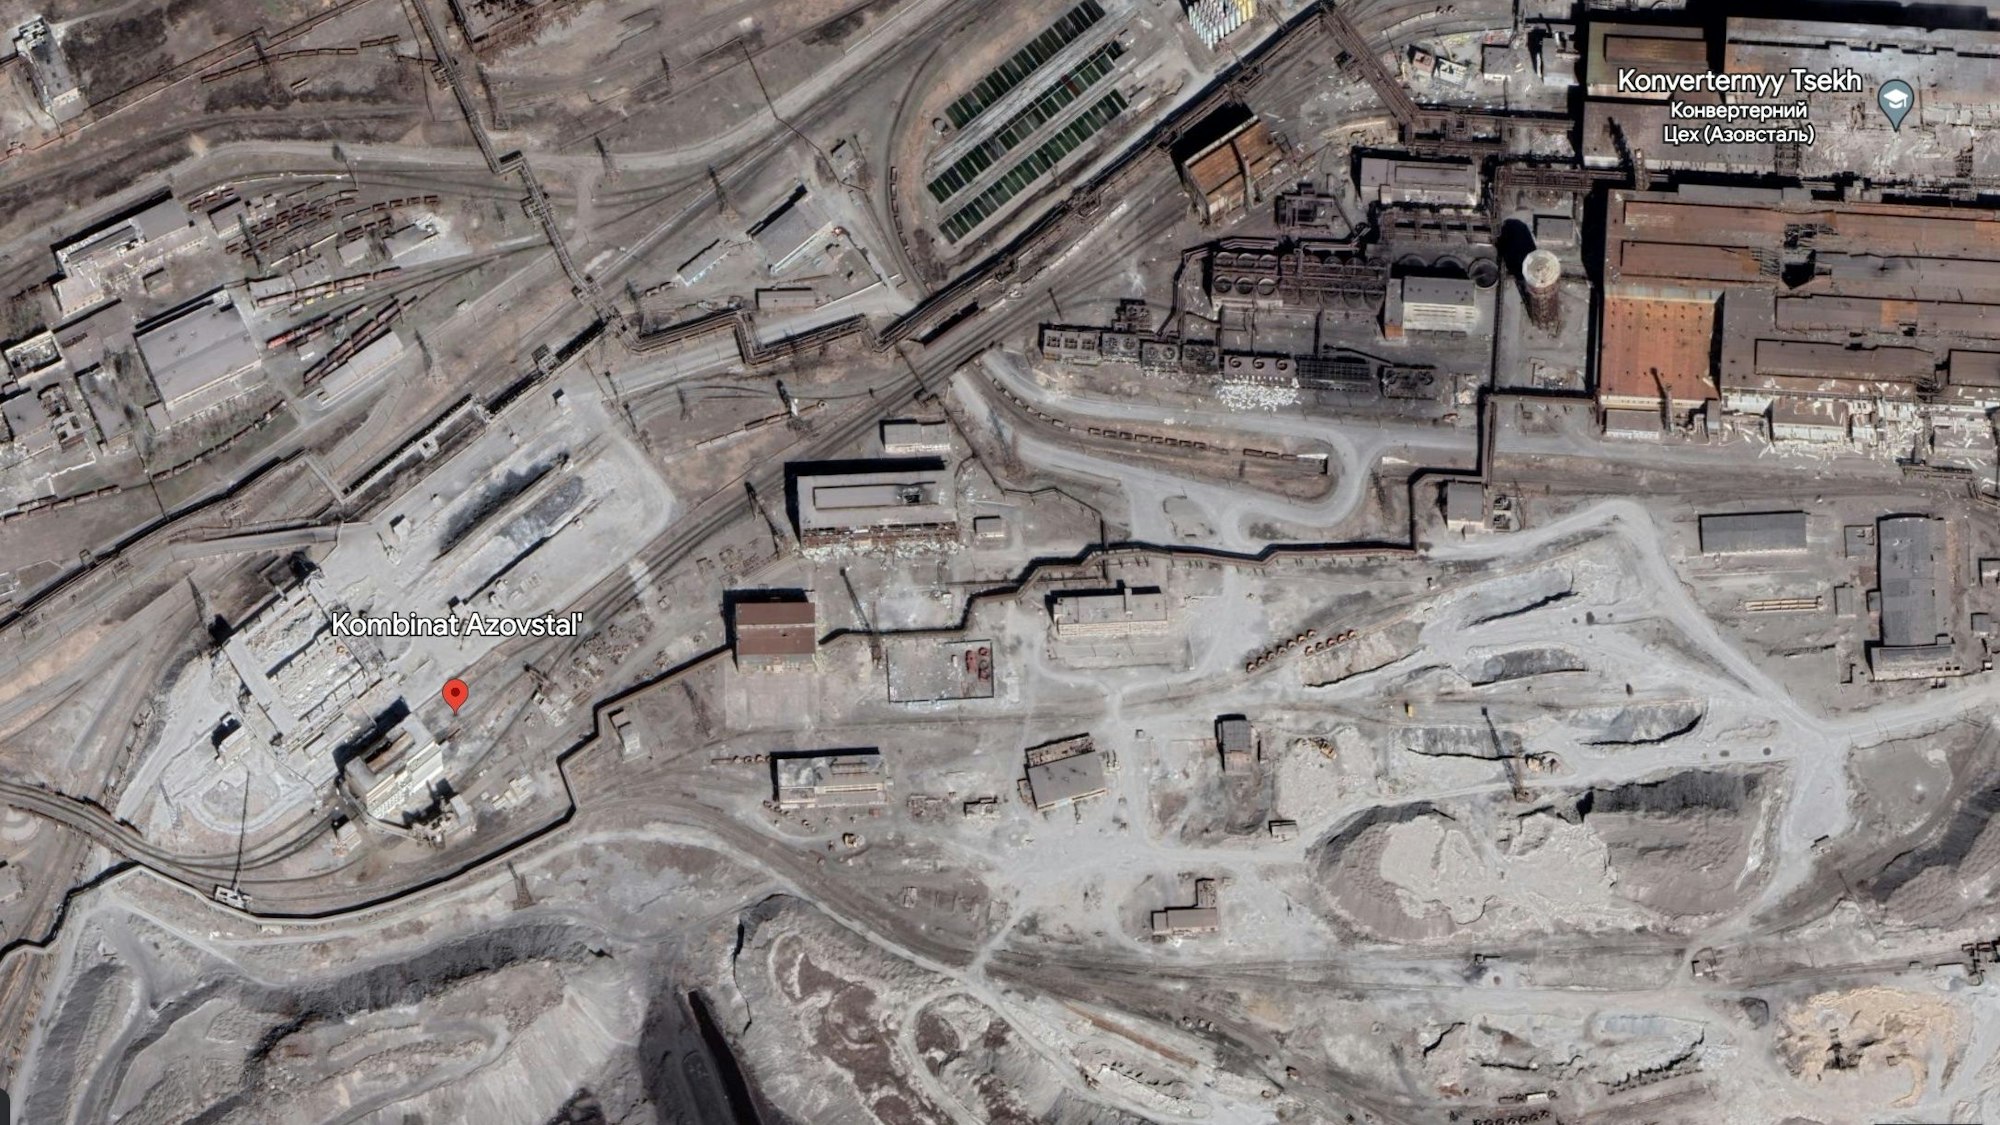 Dieser Screenshot zeigt das zerstörte Asow-Stahlwerk in der Ukraine.